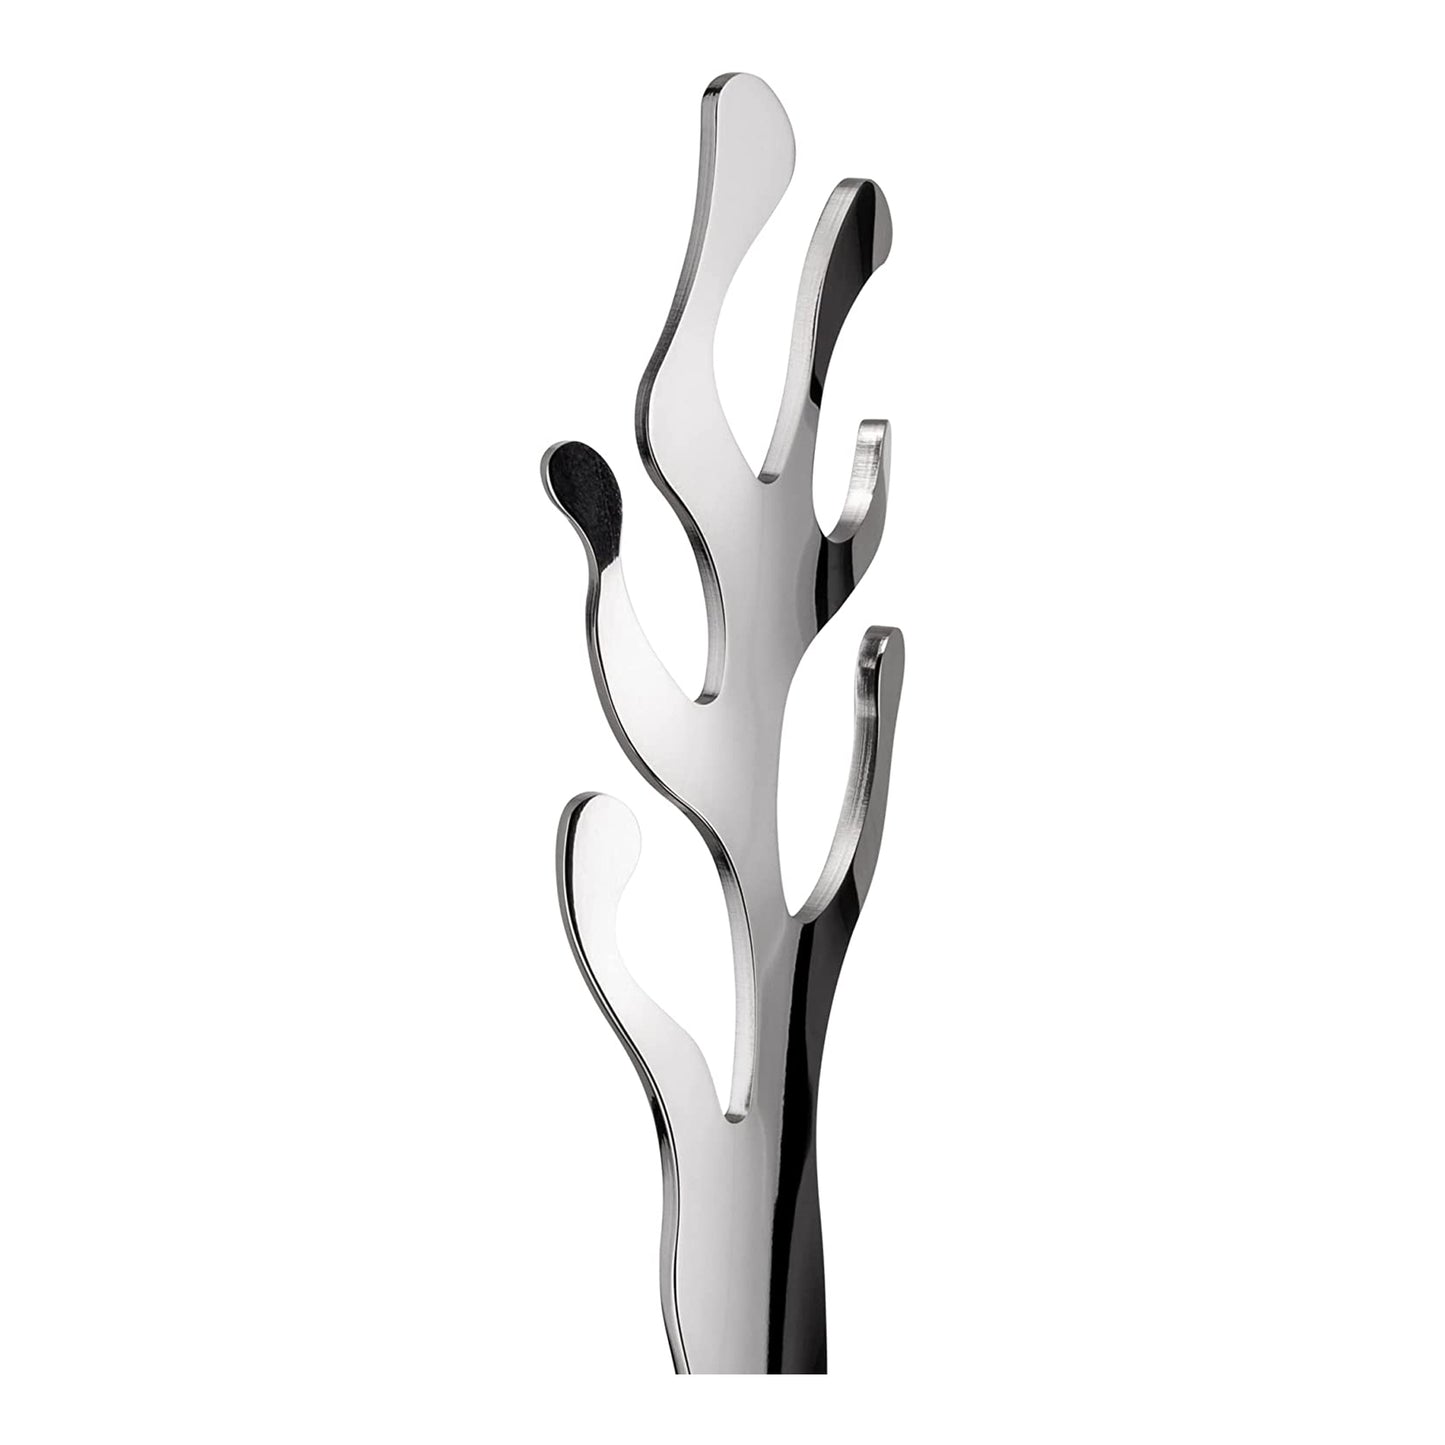 Alessi Mediterraneo ESI02 - Design Küchenrollenhalter, aus Edelstahl, glänzend poliert, 14 x 18.5 x 22.5 cm